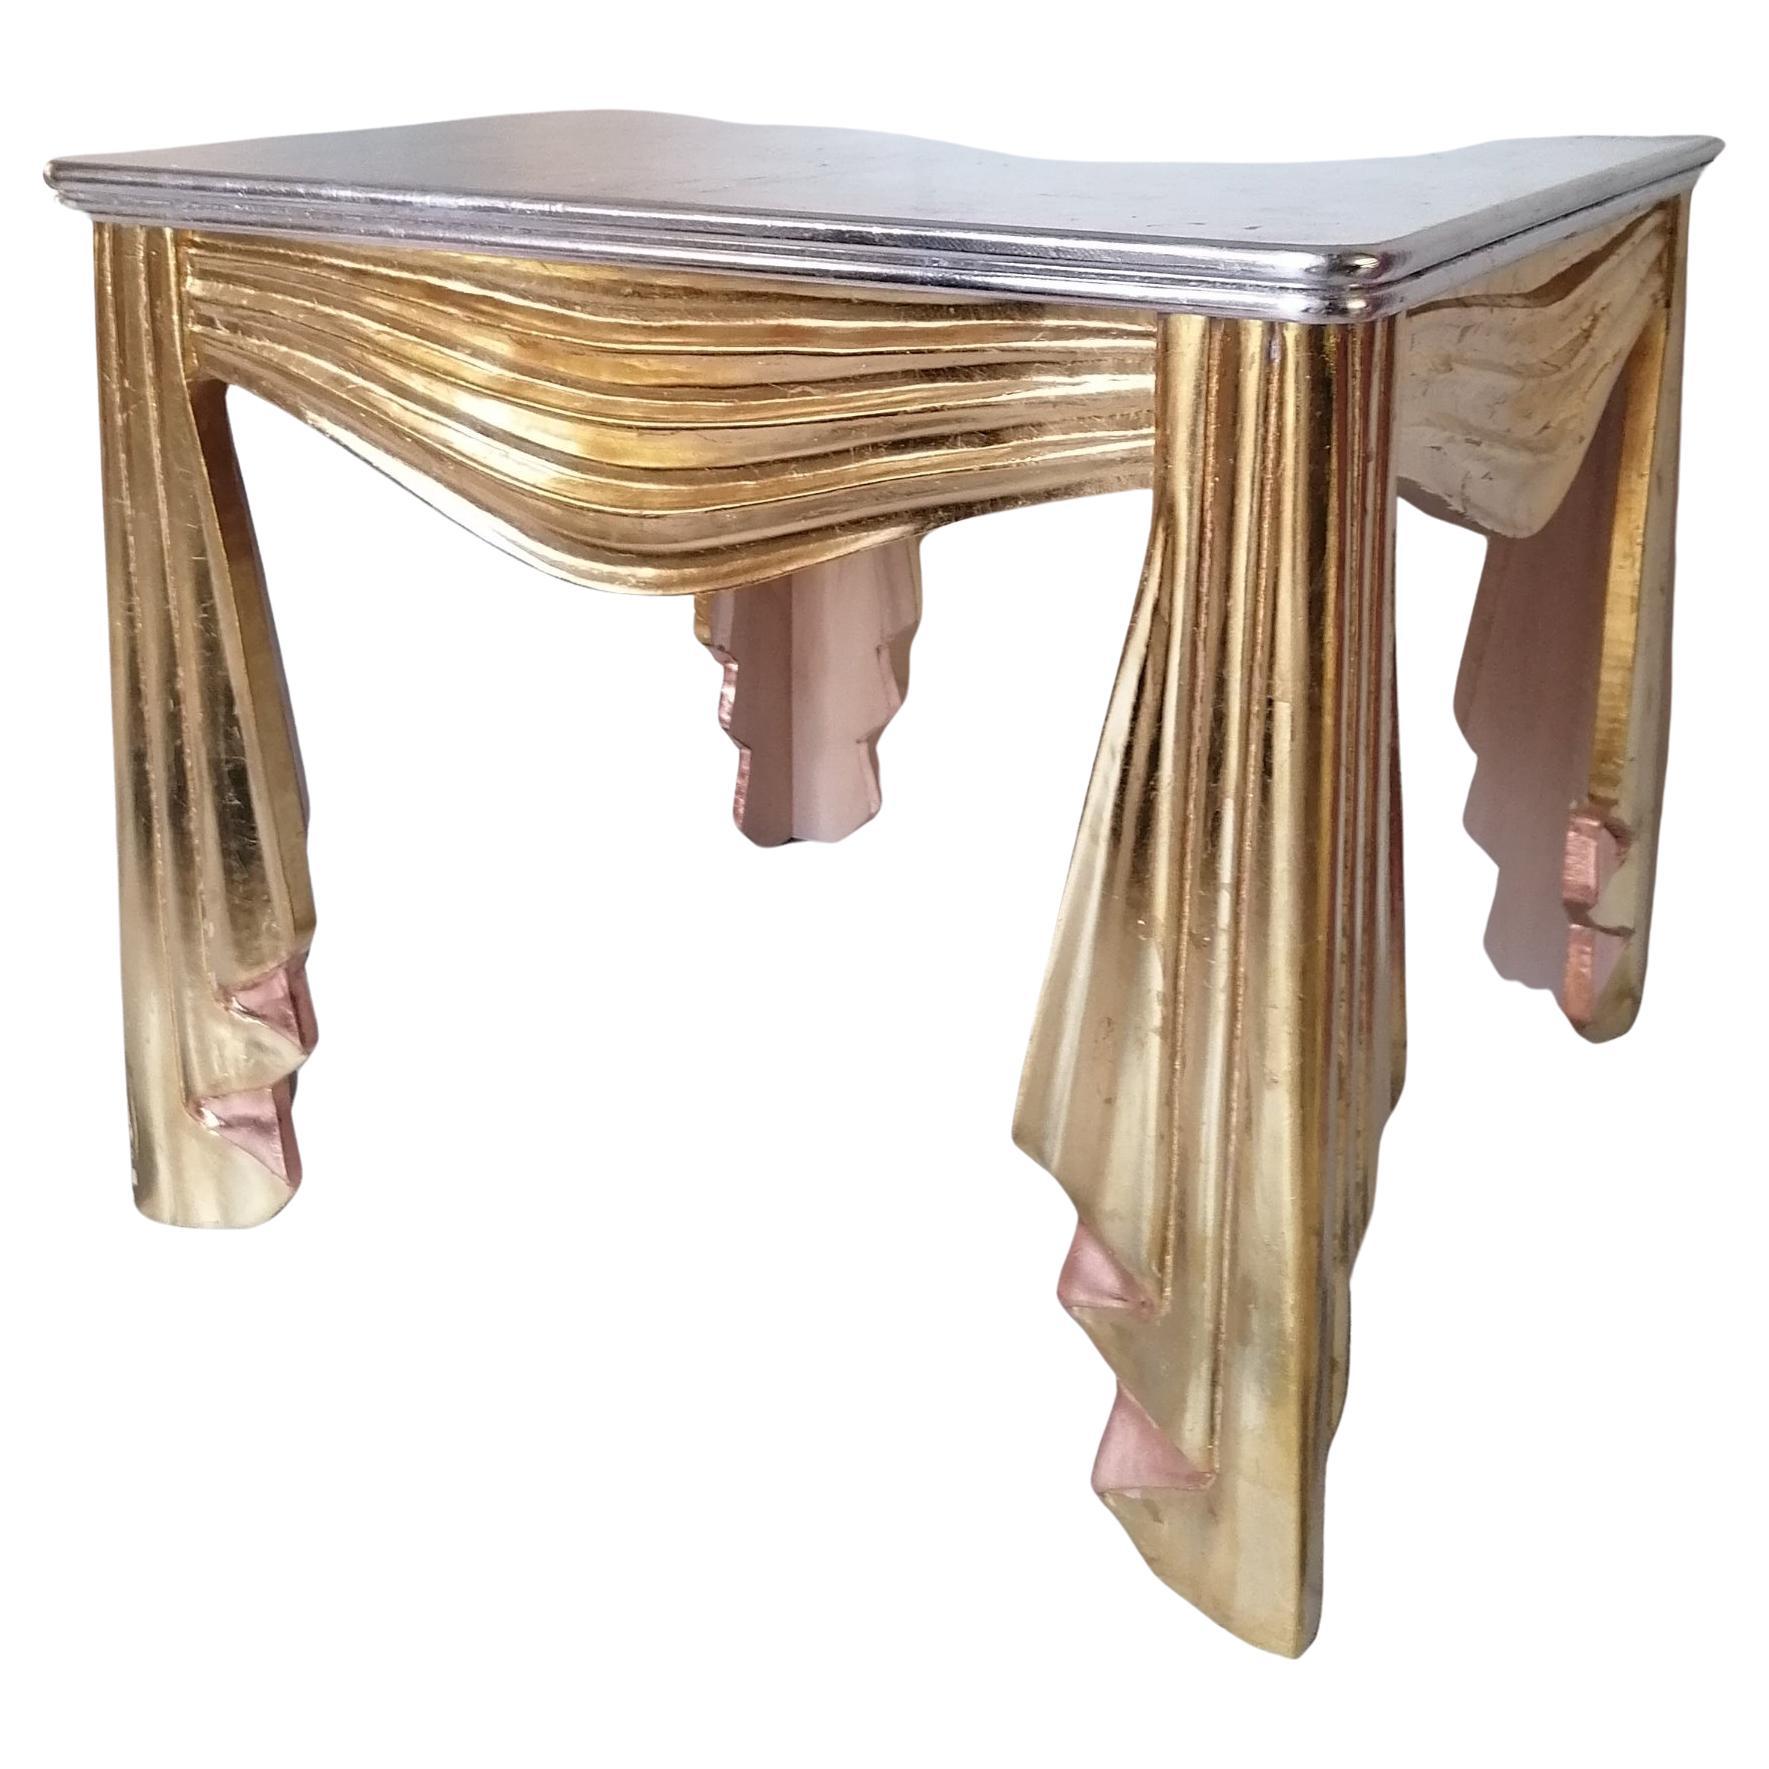 Dekorative Hollywood Regency vergoldet geschnitzt Holz Tisch in Form von swagged & ruched Stoff. Silberner vergoldeter Deckel. USA, 1960er / 70er Jahre. Es gibt einige altersbedingte, um das Finish in Orten, aber insgesamt sieht gut